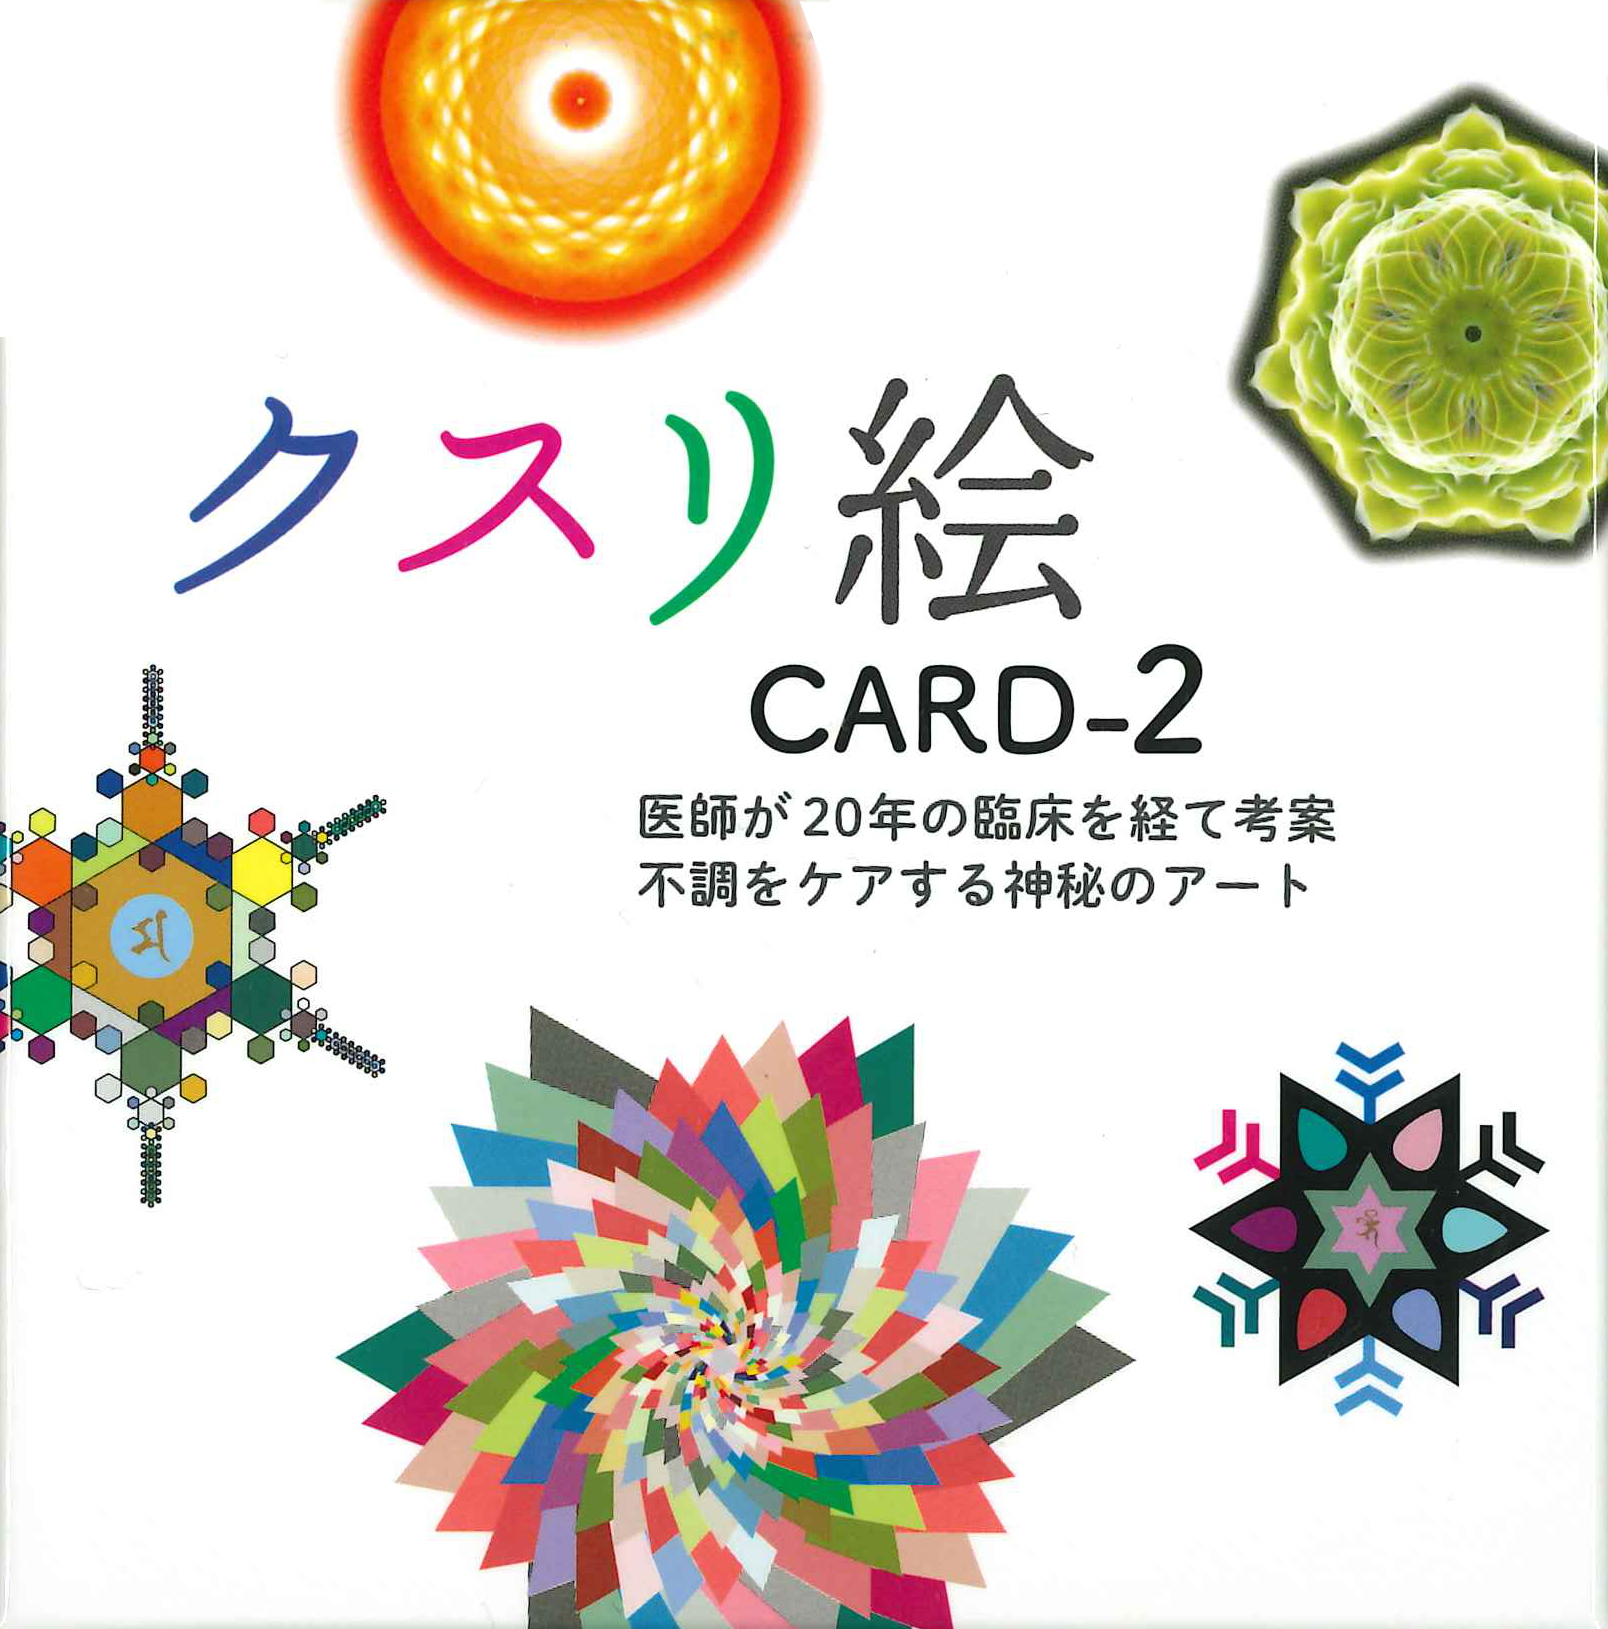 クスリ絵カード2 - ビオマガジン